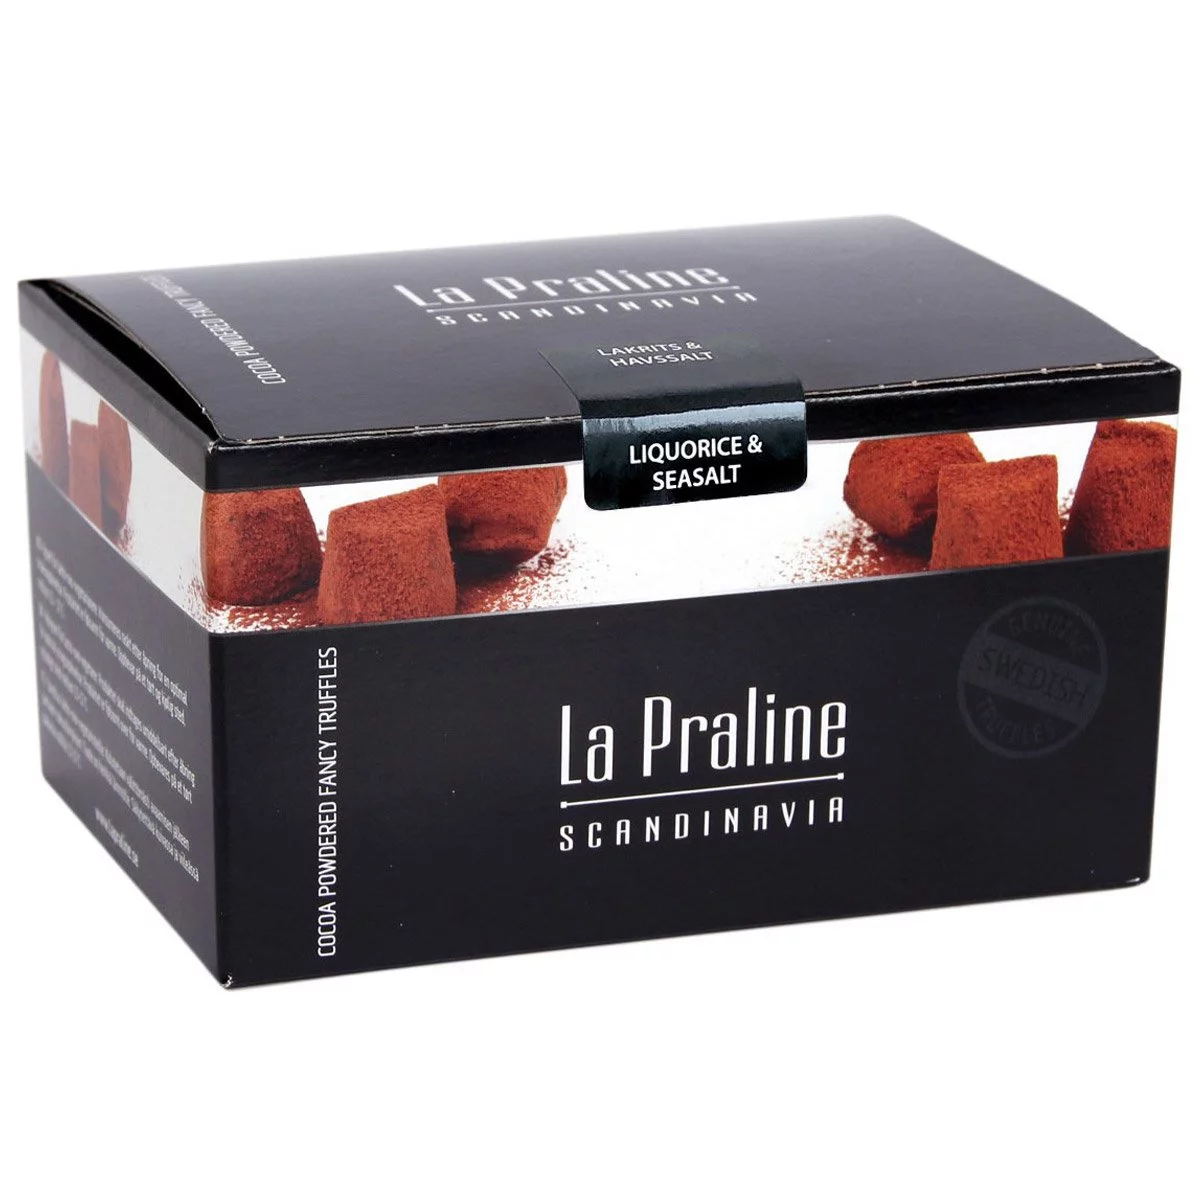 La Praline Fancy Truffles Lakritz/Meersalz - liquorice/seasalt (200g) 1